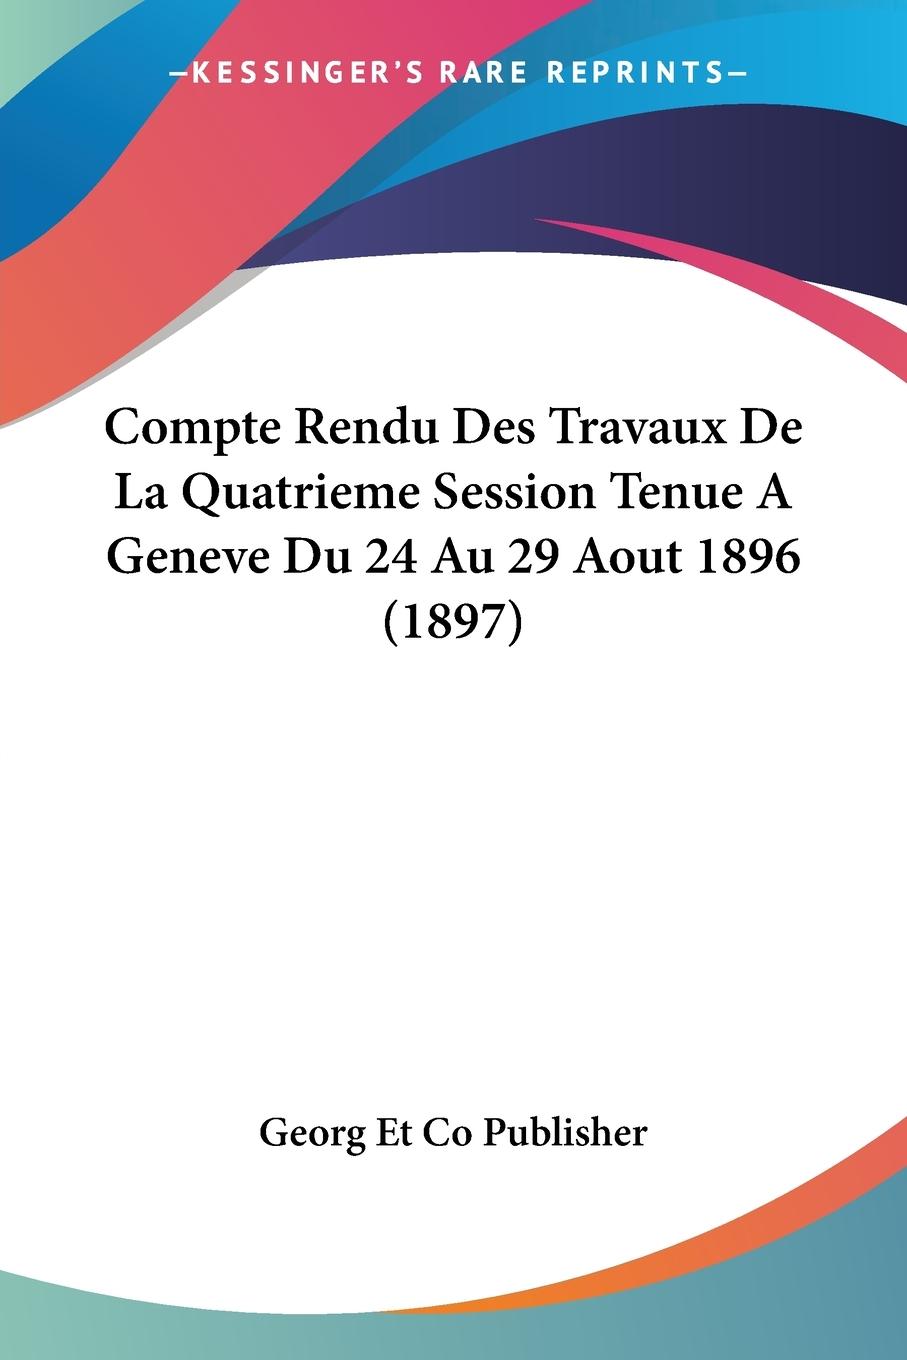 Compte Rendu Des Travaux De La Quatrieme Session Tenue A Geneve Du 24 Au 29 Aout 1896 (1897)